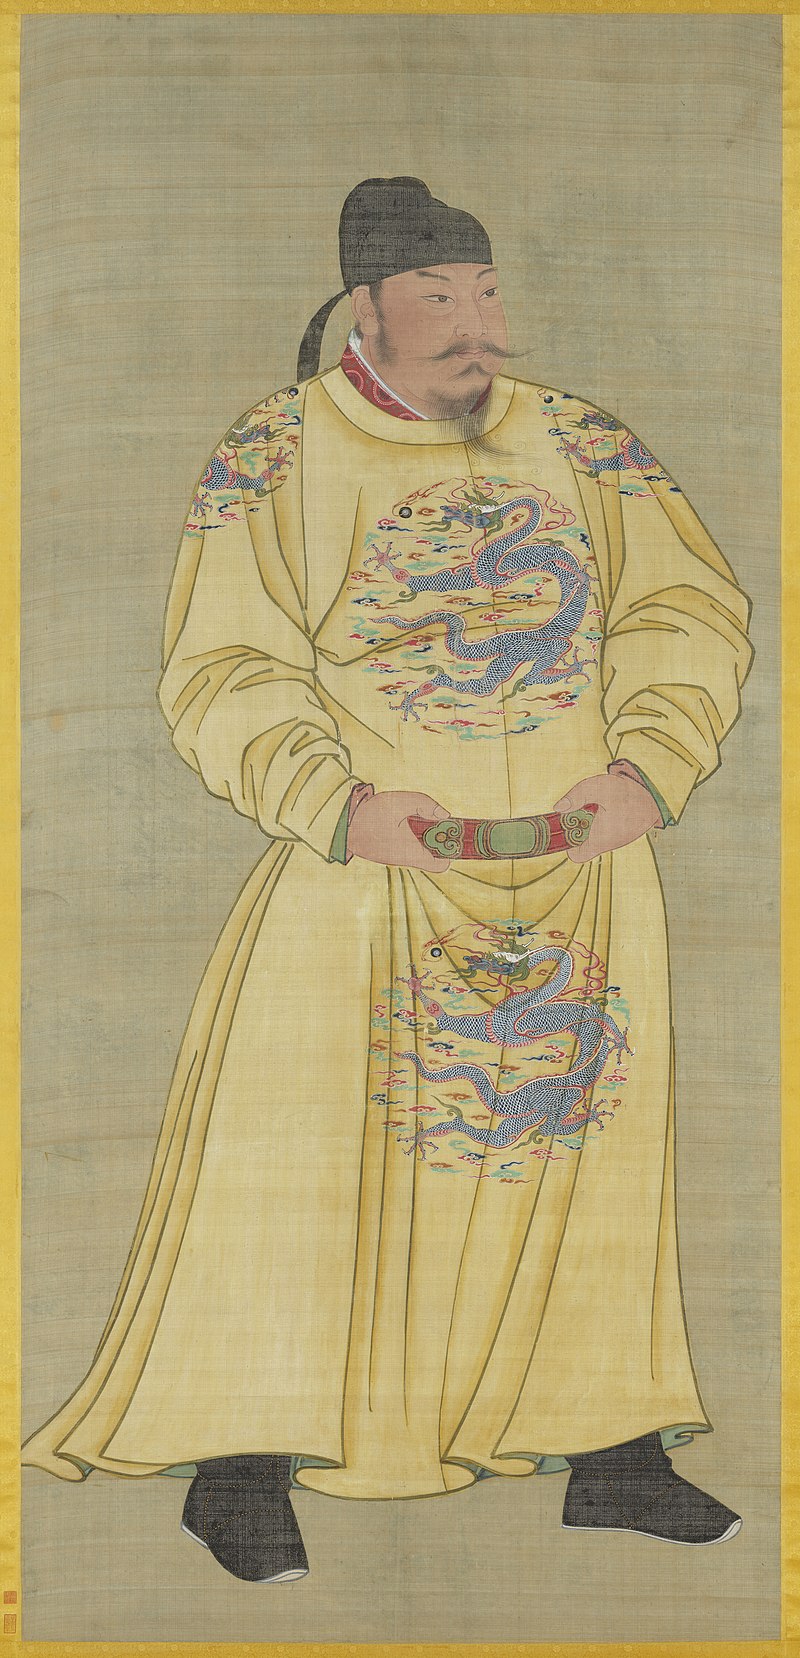 Chân dung Hoàng đế Đường Thái Tông. (Ảnh: Tài sản công)